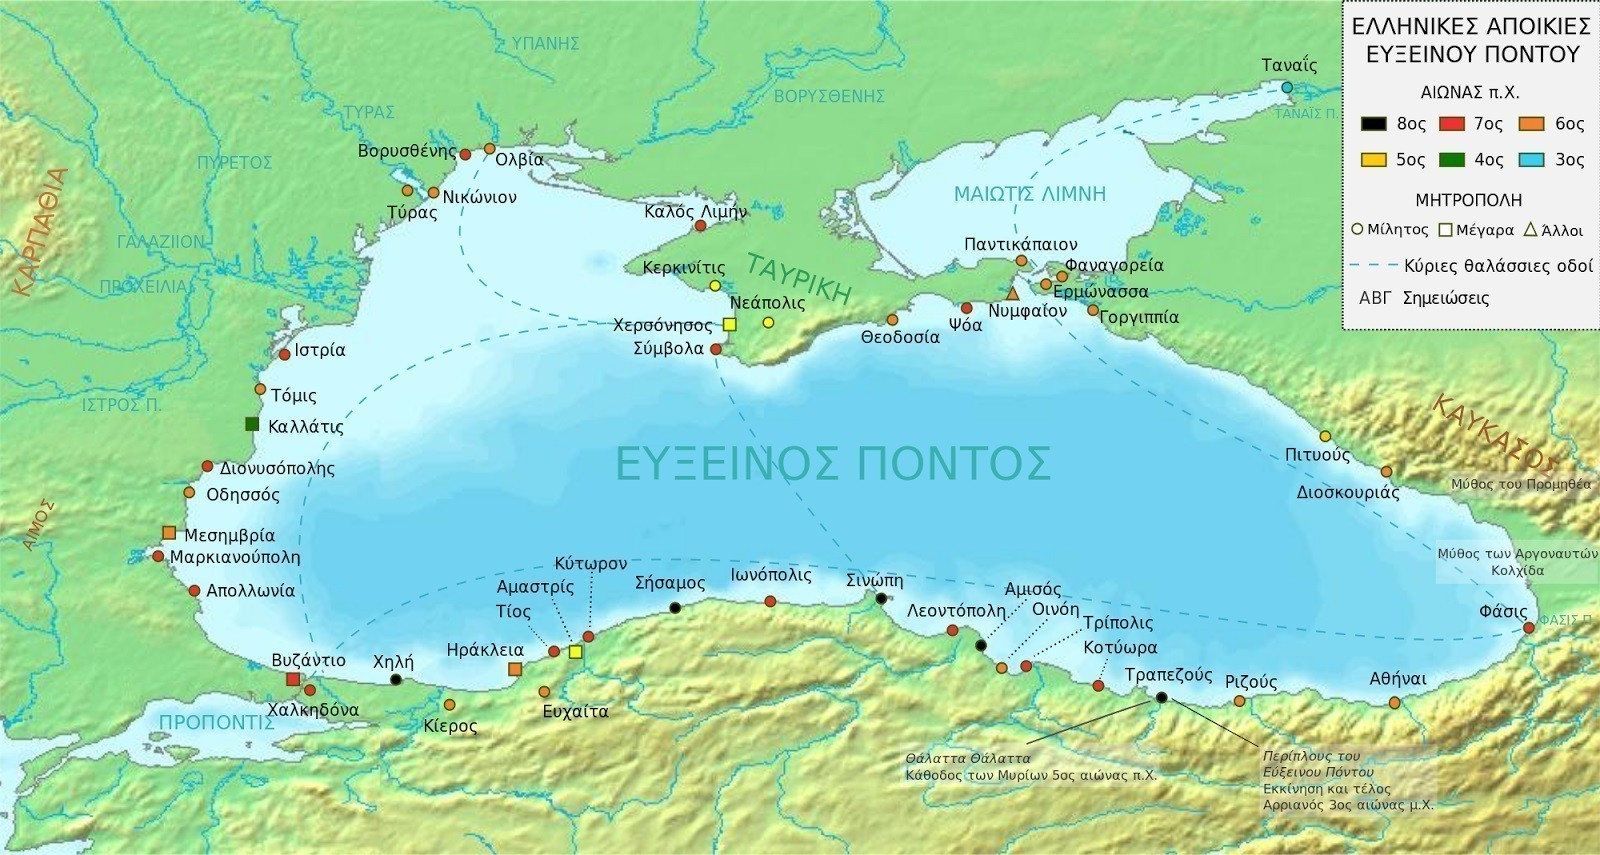 Χάρτης των ελληνικών αποικιών στον Εύξεινο Πόντο